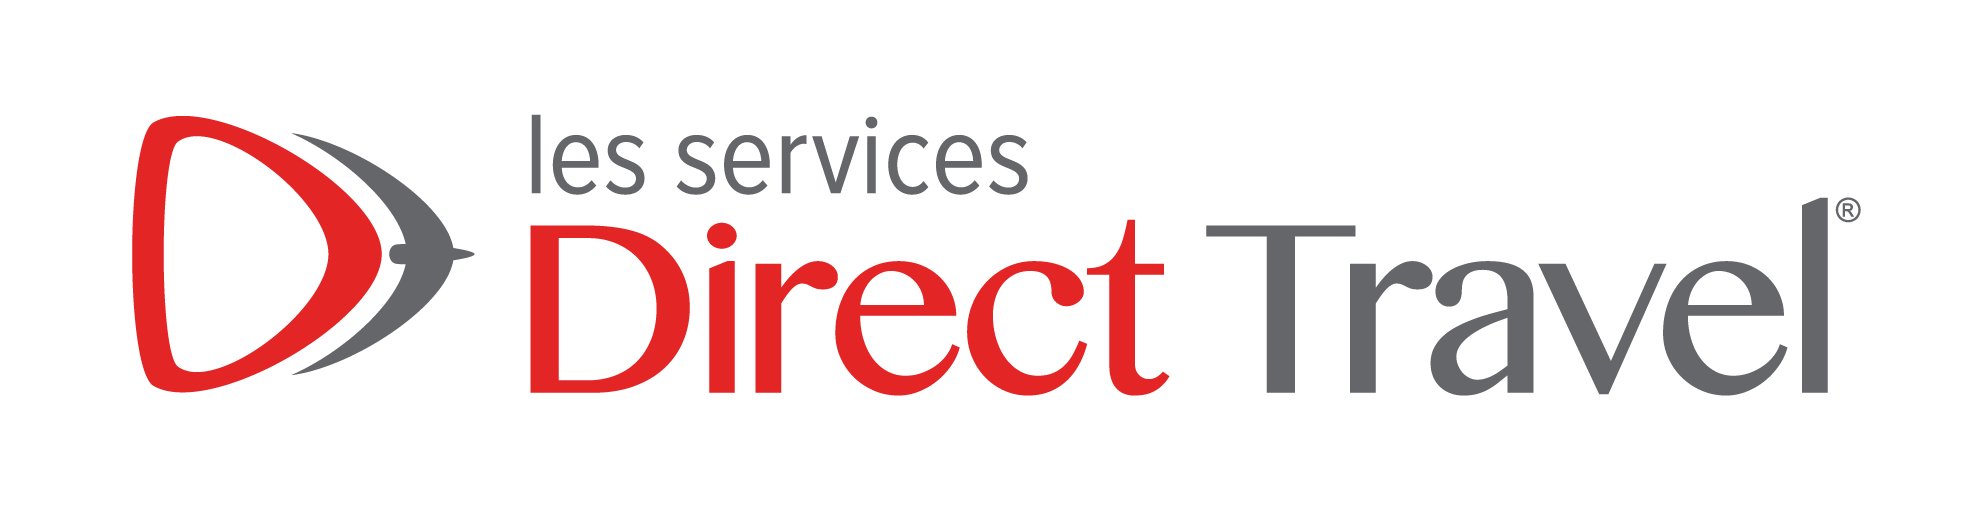 les services direct travel-01